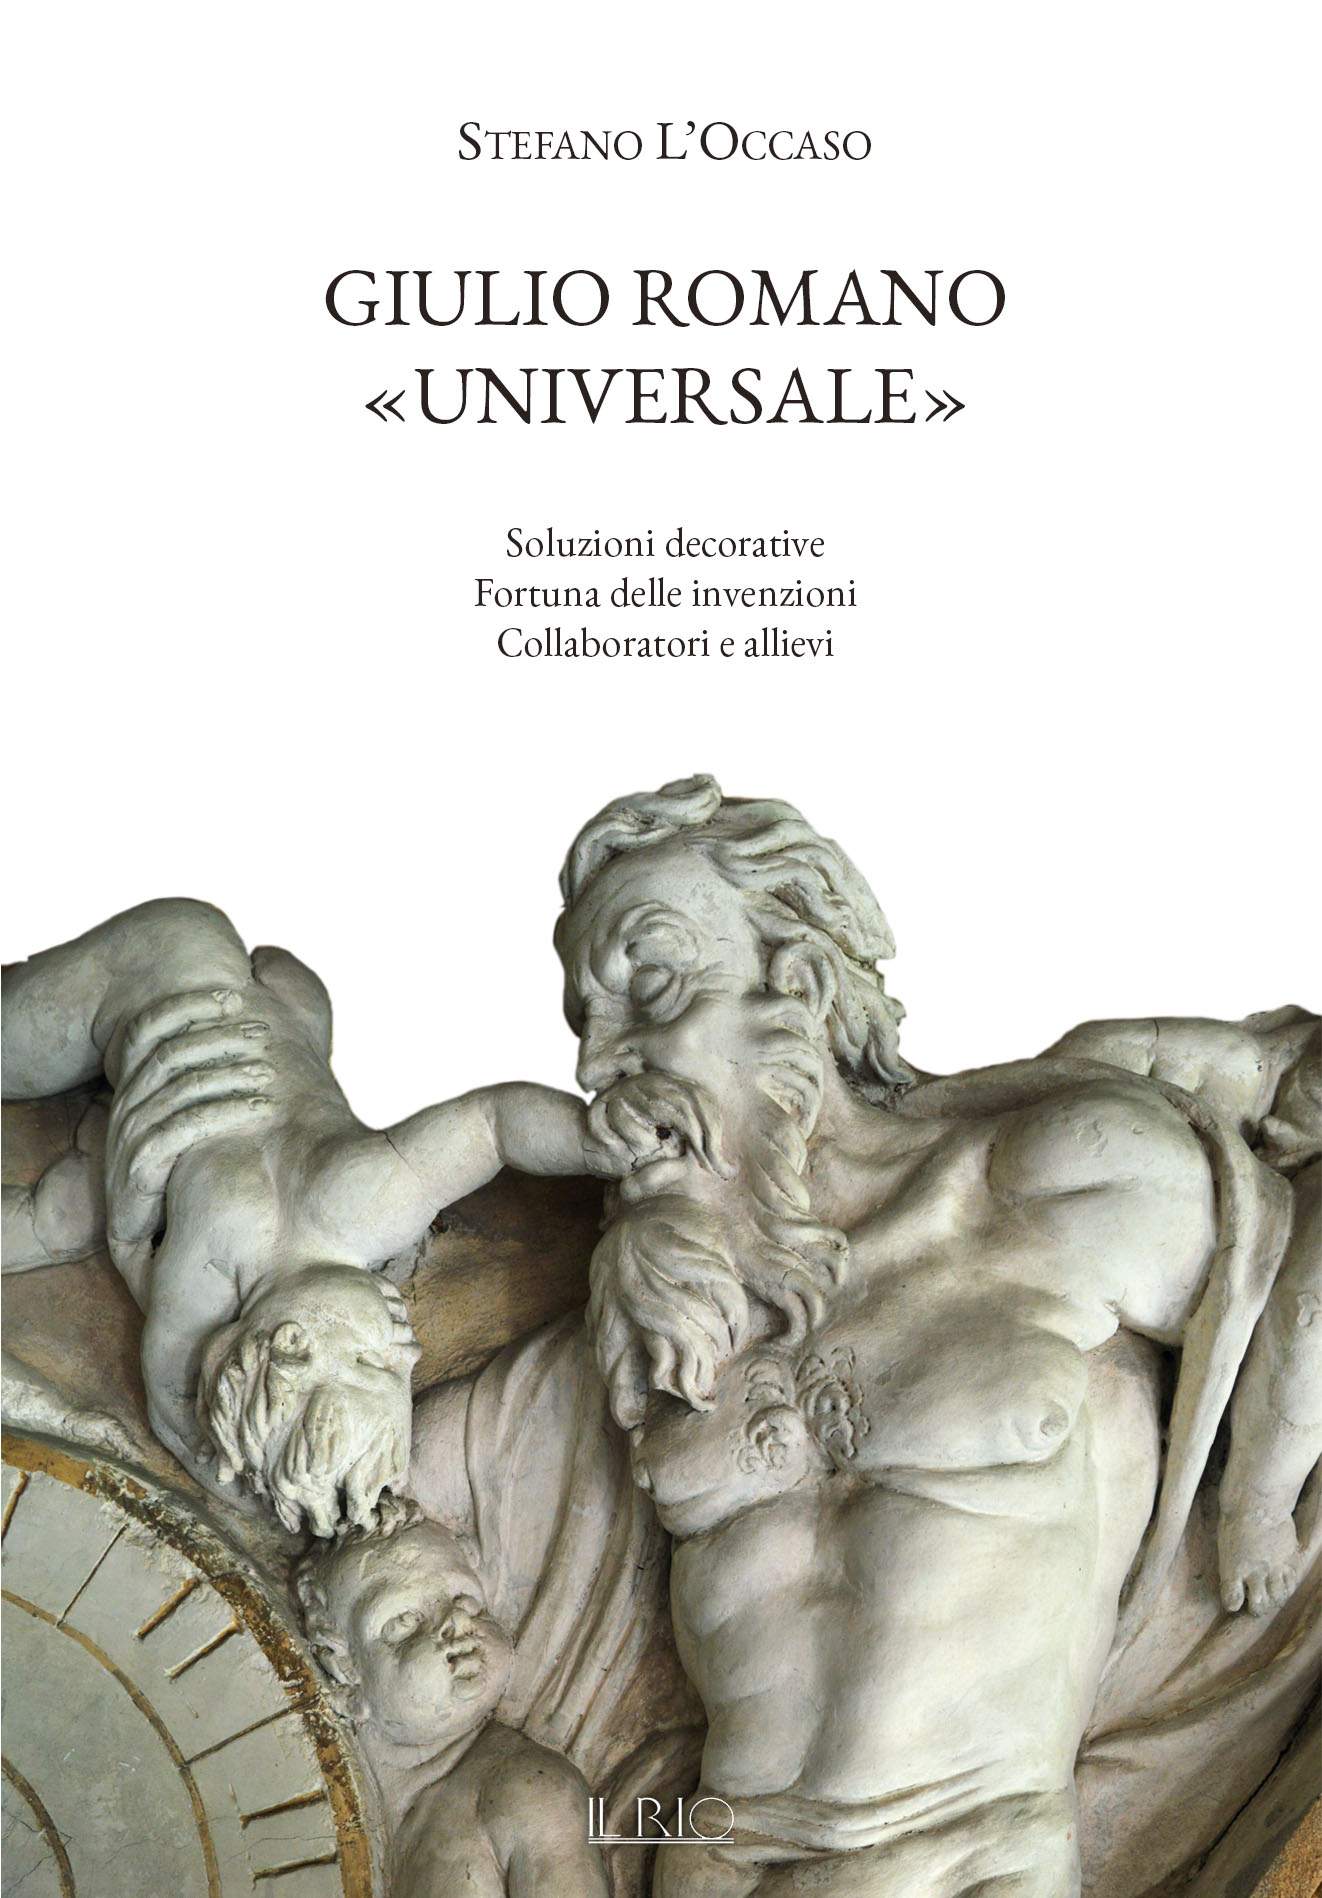 Novità e aspetti inediti su Giulio Romano a Mantova nel nuovo libro di Stefano L'Occaso 